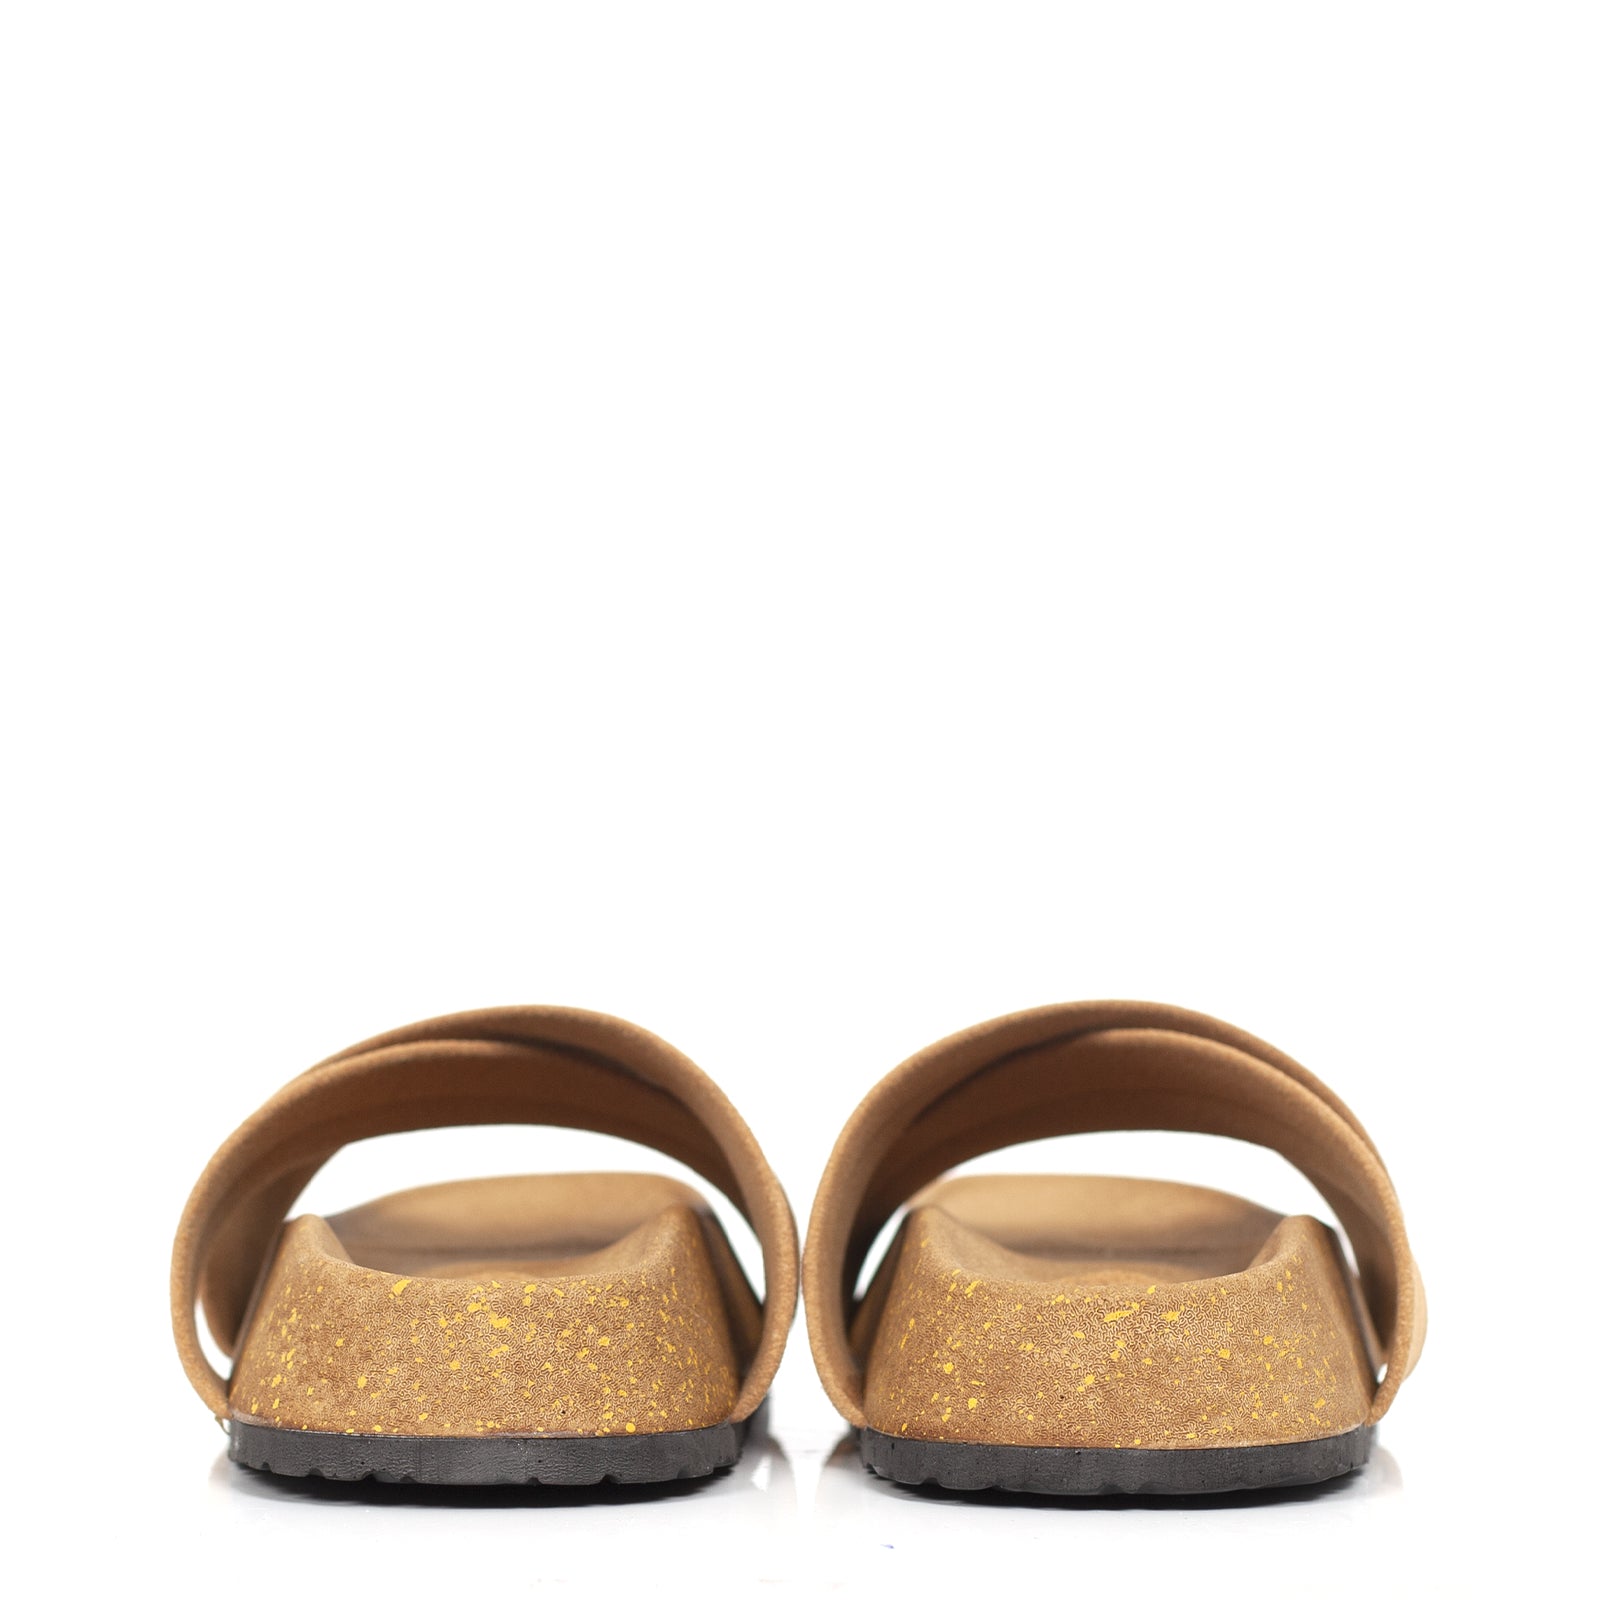 Sandale plat confortable beige